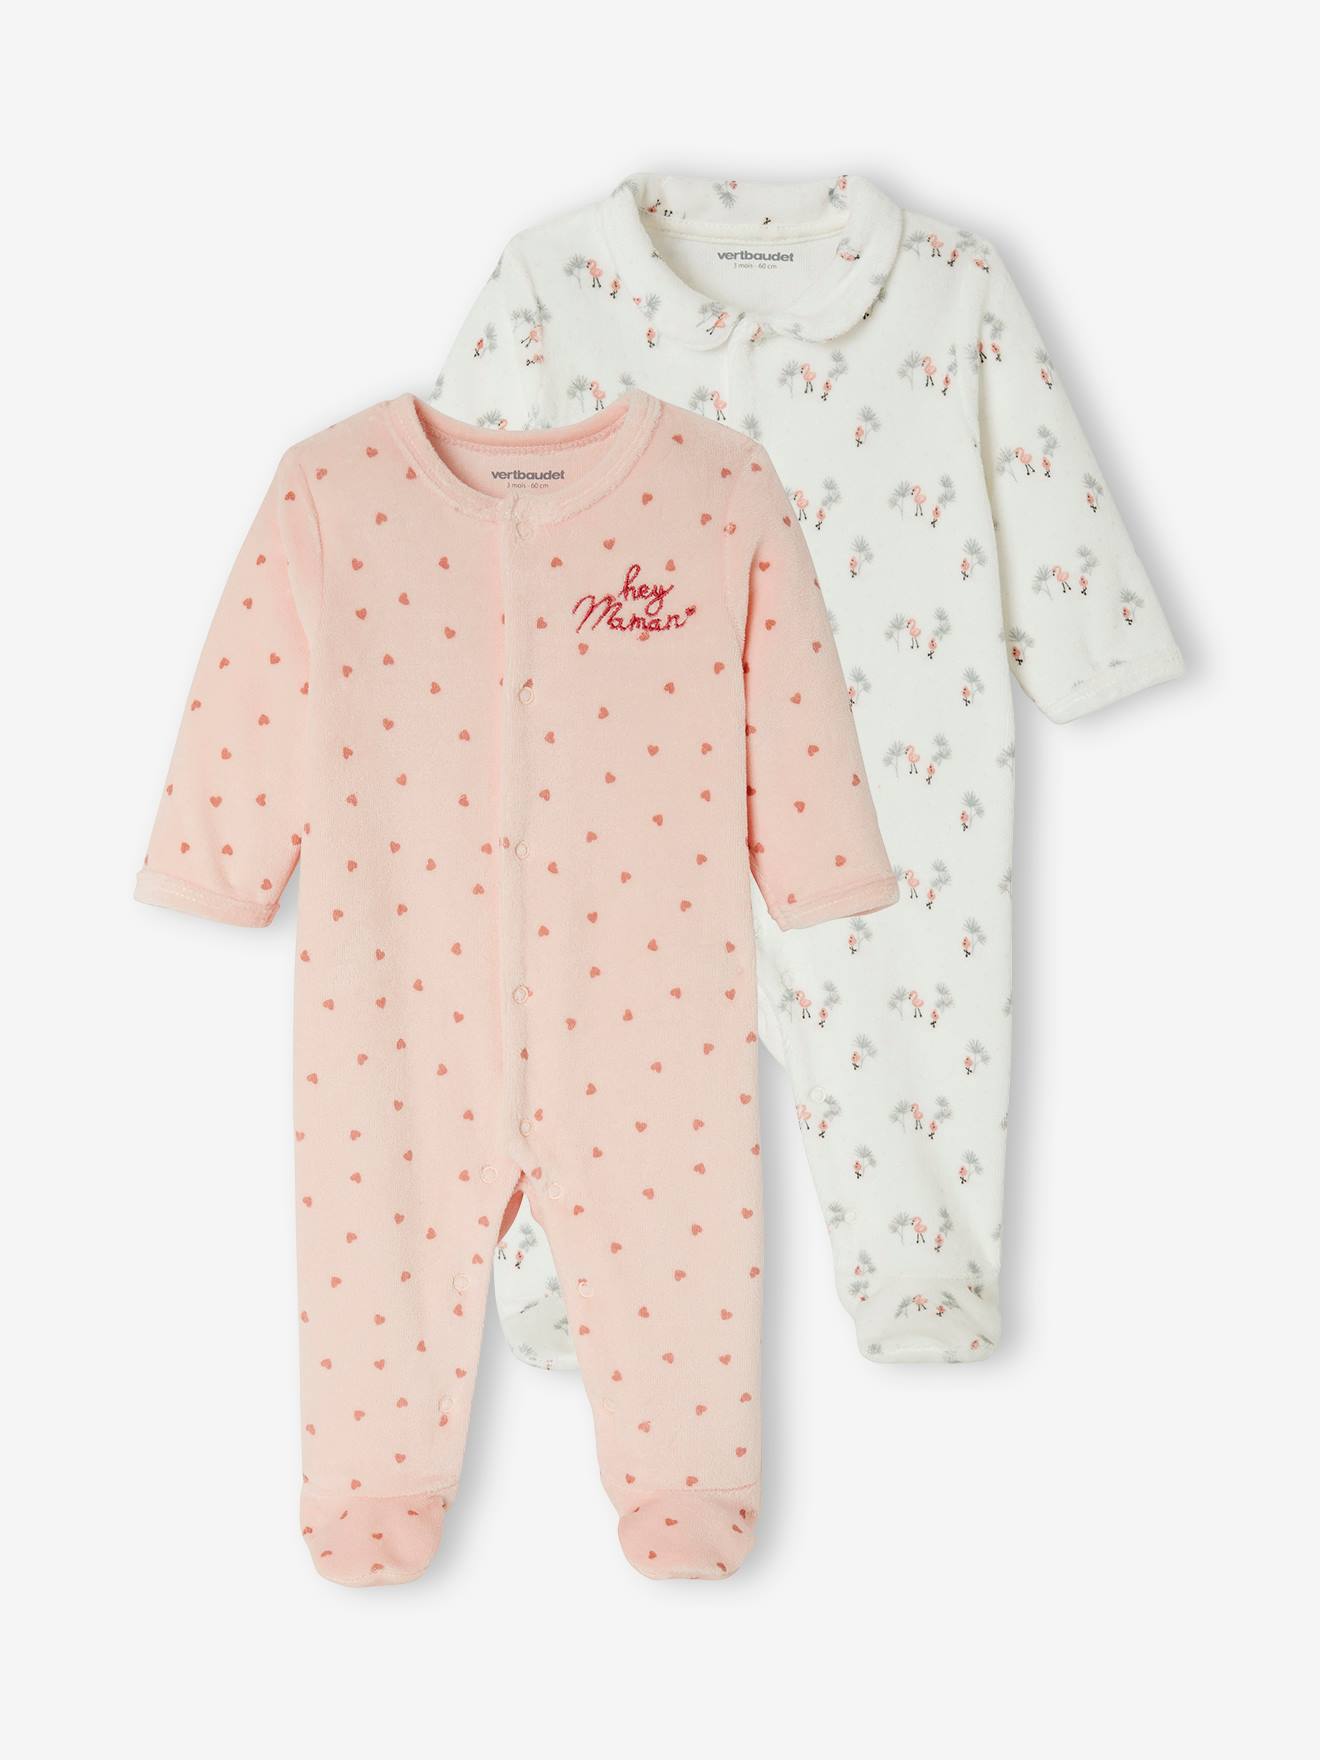 Lot de 2 pyjamas bébé en velours ouverture naissance rose pâle - Vertbaudet